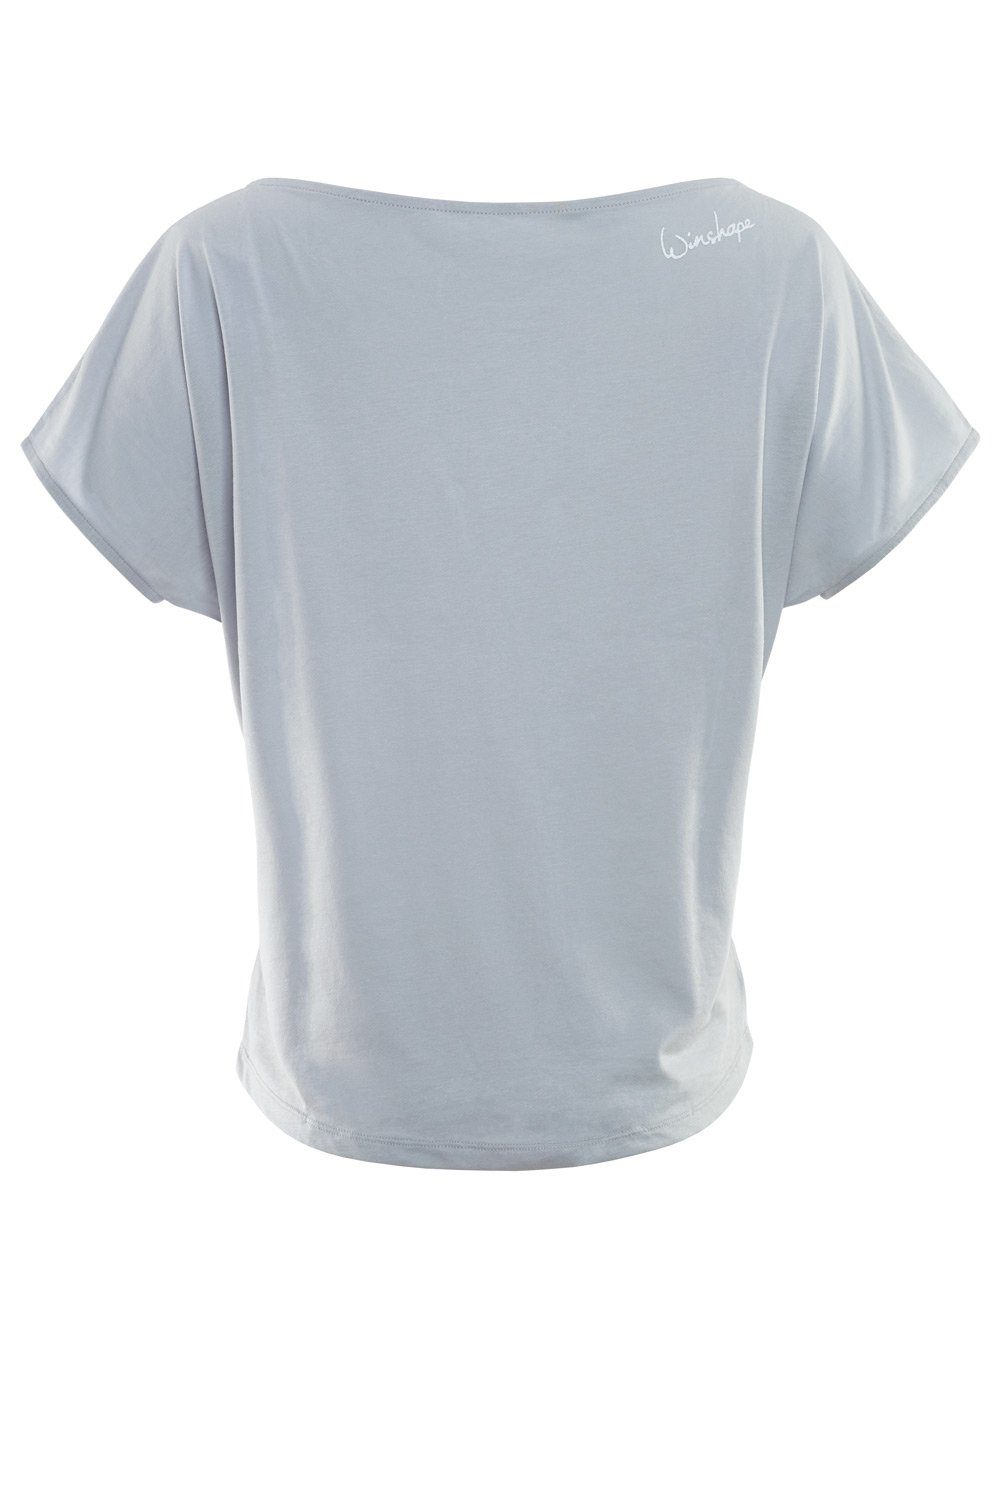 Oversize-Shirt leicht weißem MCT002 mit Glitzer-Aufdruck Winshape ultra